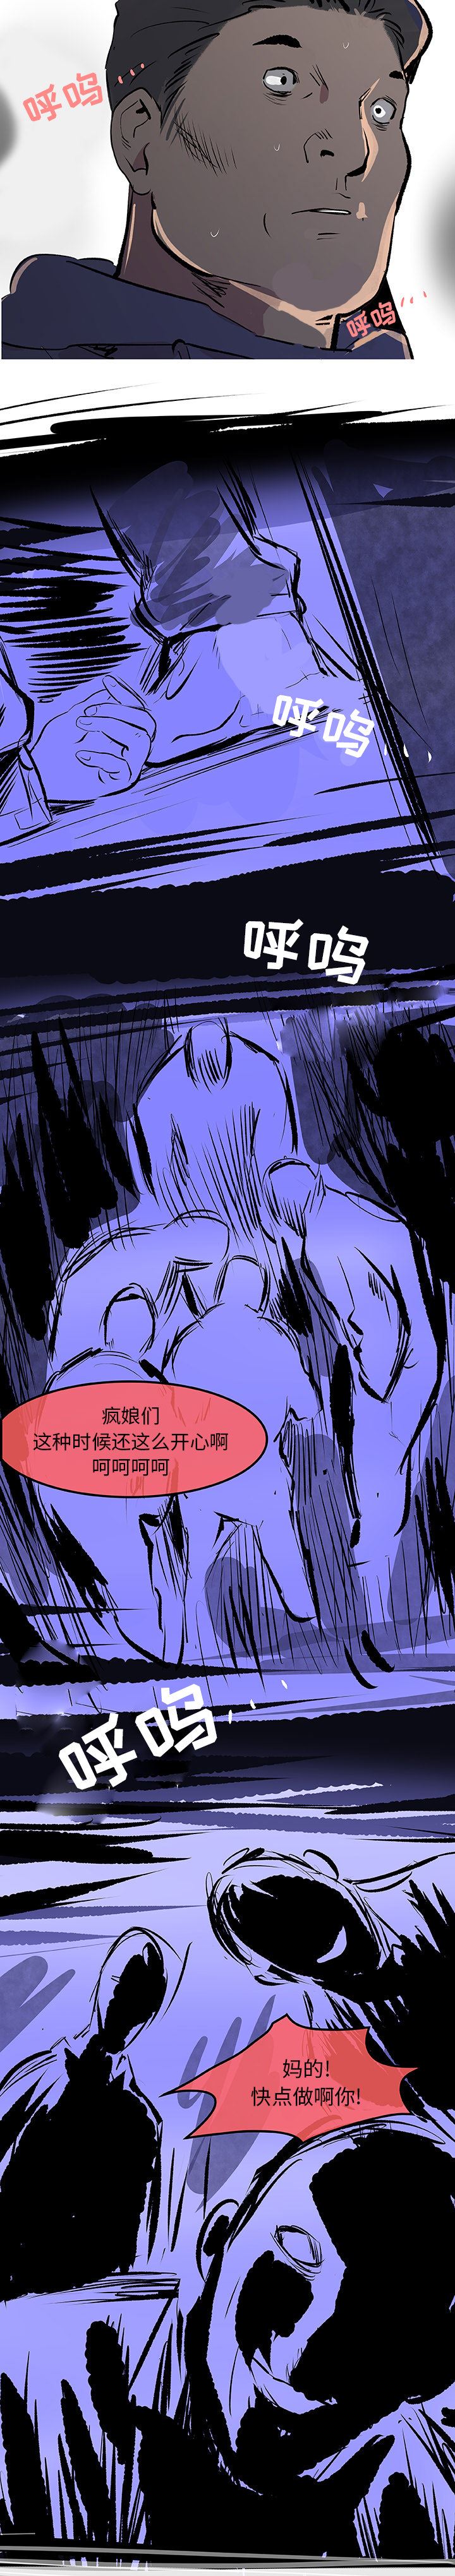 韩国污漫画 任何小姐 30 12